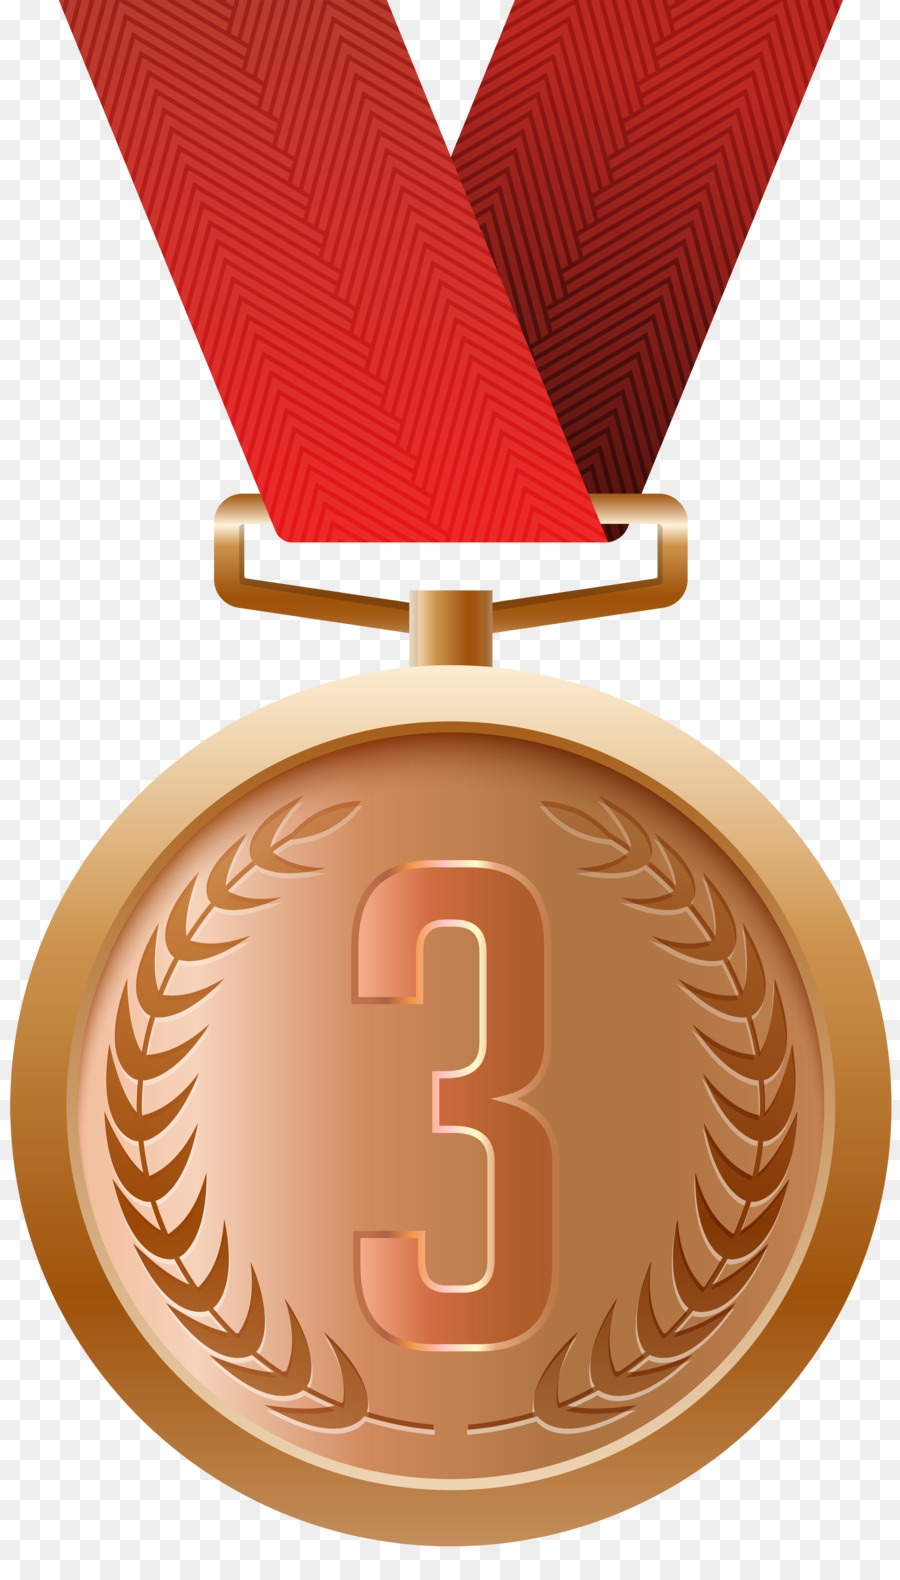 Bronze medal Gold medal Silver medal Clip art - medal png download - 4615*8000 - Free Transparent Medal png Download.